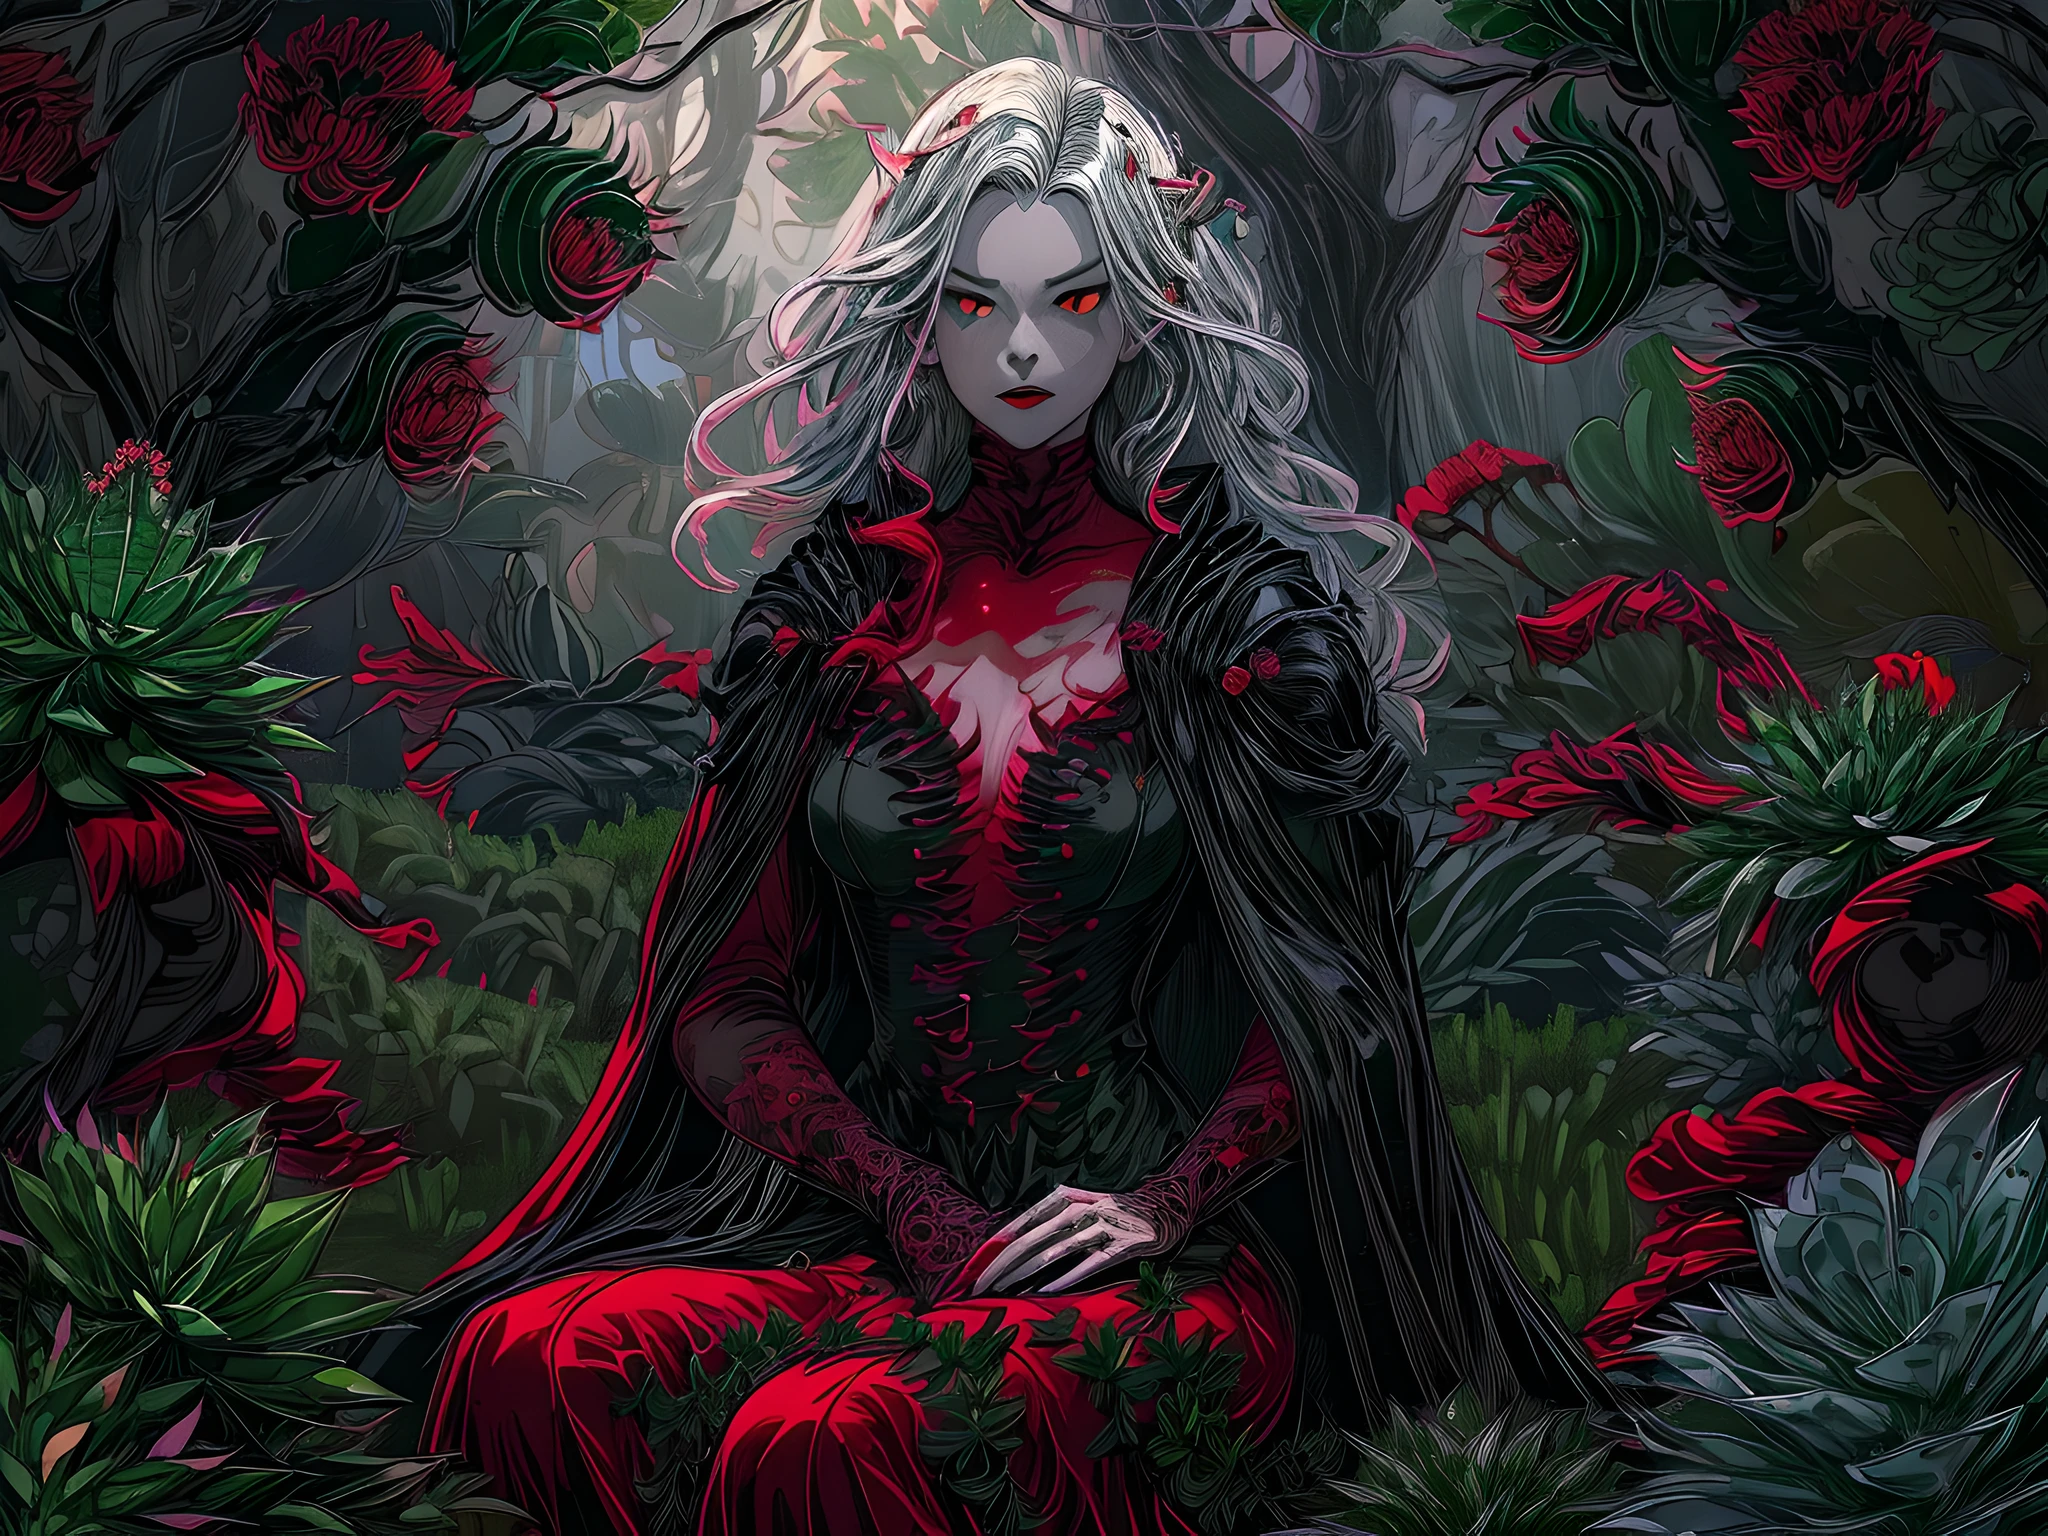 picture of a vampire woman 休息在 a (黑色的:1.2) 和 (紅色的:1.2) colo紅色的 succulents meadow, 全身, 一個精緻美麗的 (超詳細, 傑作, 最好的品質: 1.4) 女 吸血鬼 女人, 動態角度 (最好詳細, 傑作, 最好的品質), 超詳細 face (超詳細, 傑作, 最好的品質), 超女性化, 灰色皮膚, 金髮, 捲髮, 動態眼睛顏色, 冷眼, 發光的眼睛, 眼神銳利, dark 紅色的 lips, [獠牙], 穿著白色連身裙, 優雅風格連身裙 (超詳細, 傑作, 最好的品質), 穿著藍色斗篷 (超詳細, 傑作, 最好的品質), 長斗篷, 飄逸斗篷 (超詳細, 傑作, 最好的品質), 穿著高跟靴, 休息在 (黑色的 和 紅色的 colo紅色的 succulents meadow: 1.6), 滴血的多肉植物, full colo紅色的, (完美的光譜: 1.3),( 充滿活力的工作: 1.4) vibrant shades of 紅色的, 和 黑色的) 月亮升起, 月光, 現在是晚上, 高細節, 幻想藝術, RPG art 最好的品質, 16k, [超詳細], 傑作, 最好的品質, (超詳細), 全身, 超廣角鏡頭, 逼真的